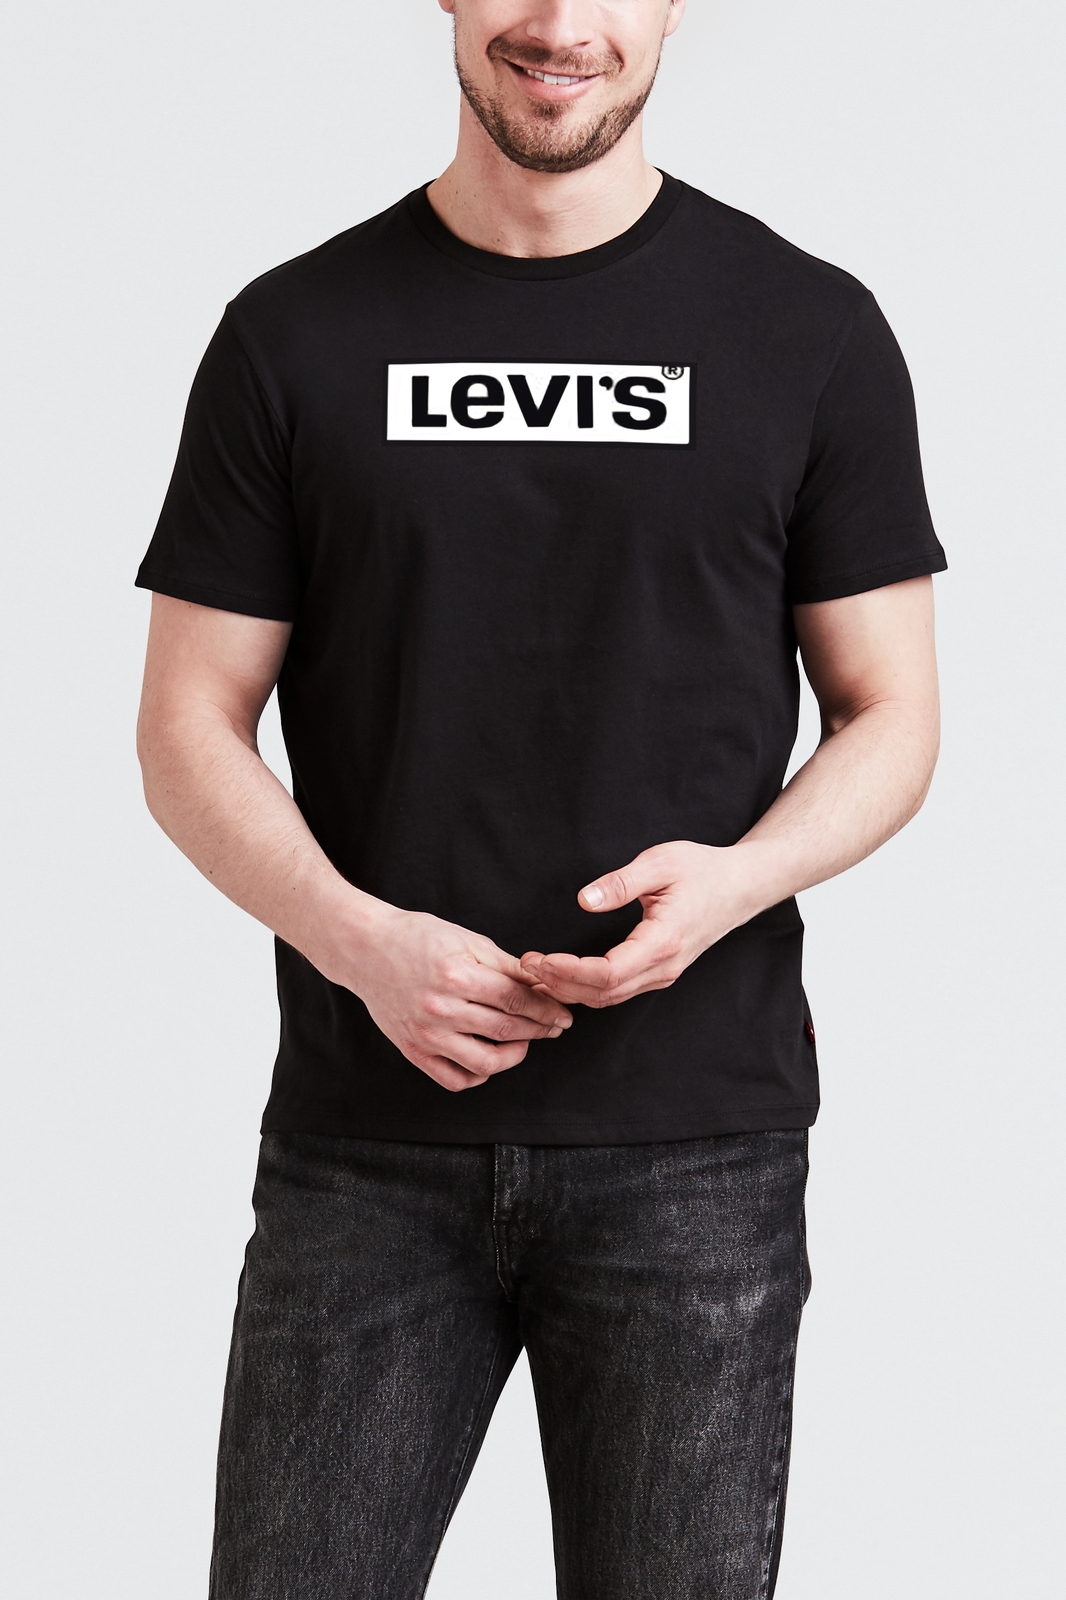 Купить футболку levis. Футболка мужская Levi's Strauss. Белая майка левайс. Levis футболка мужская черная. Футболка Levis logo серая.